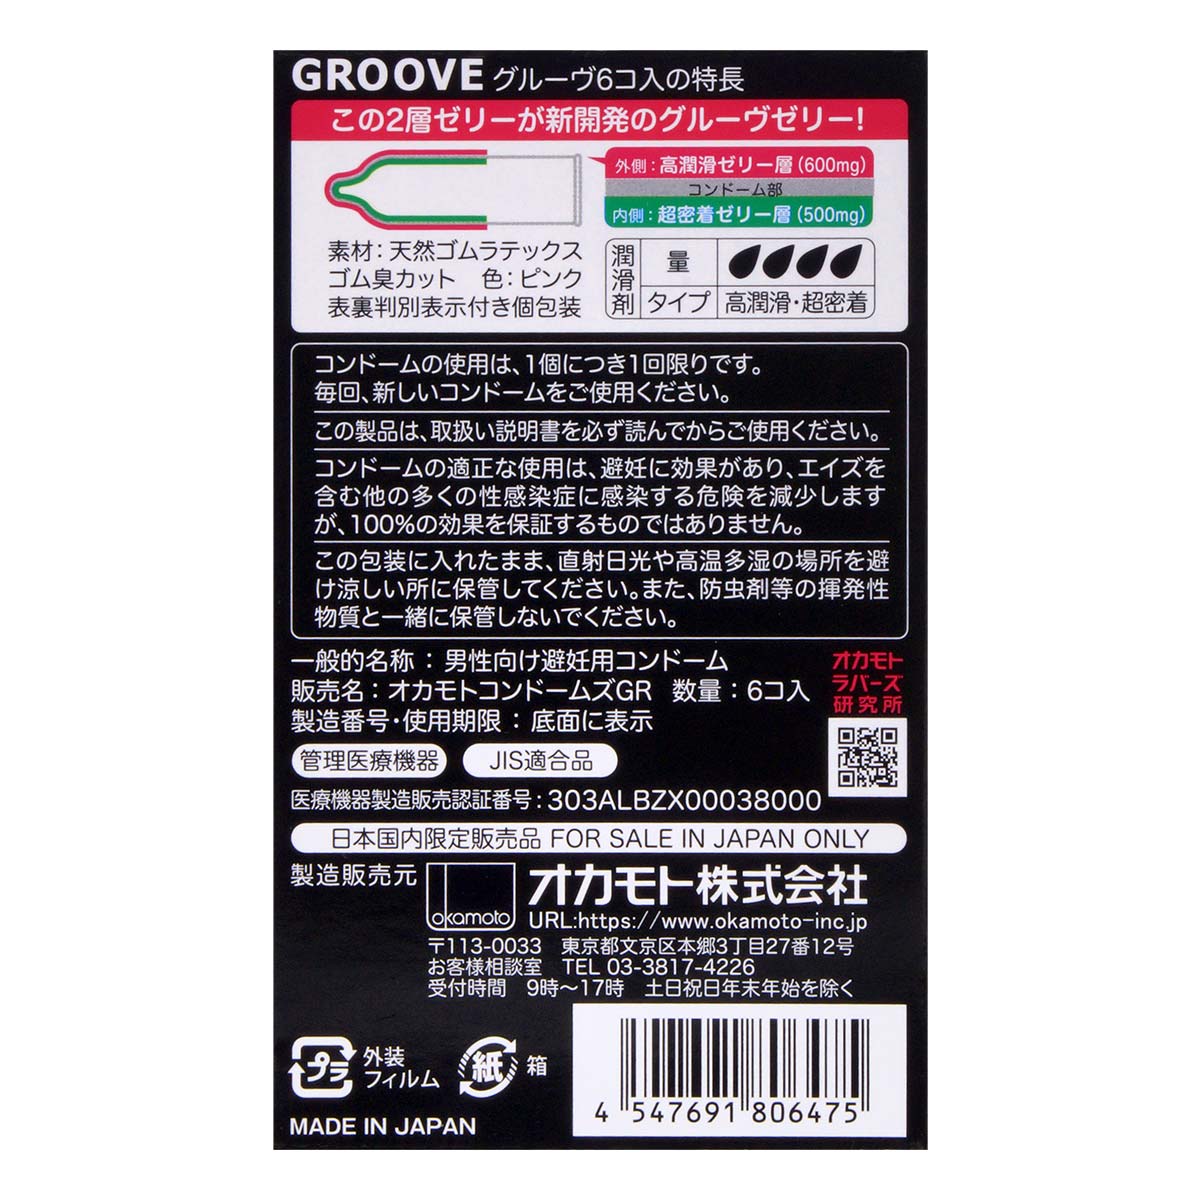 オカモト GROOVE (日本版) 6 個入 ラテックスコンドーム-p_3